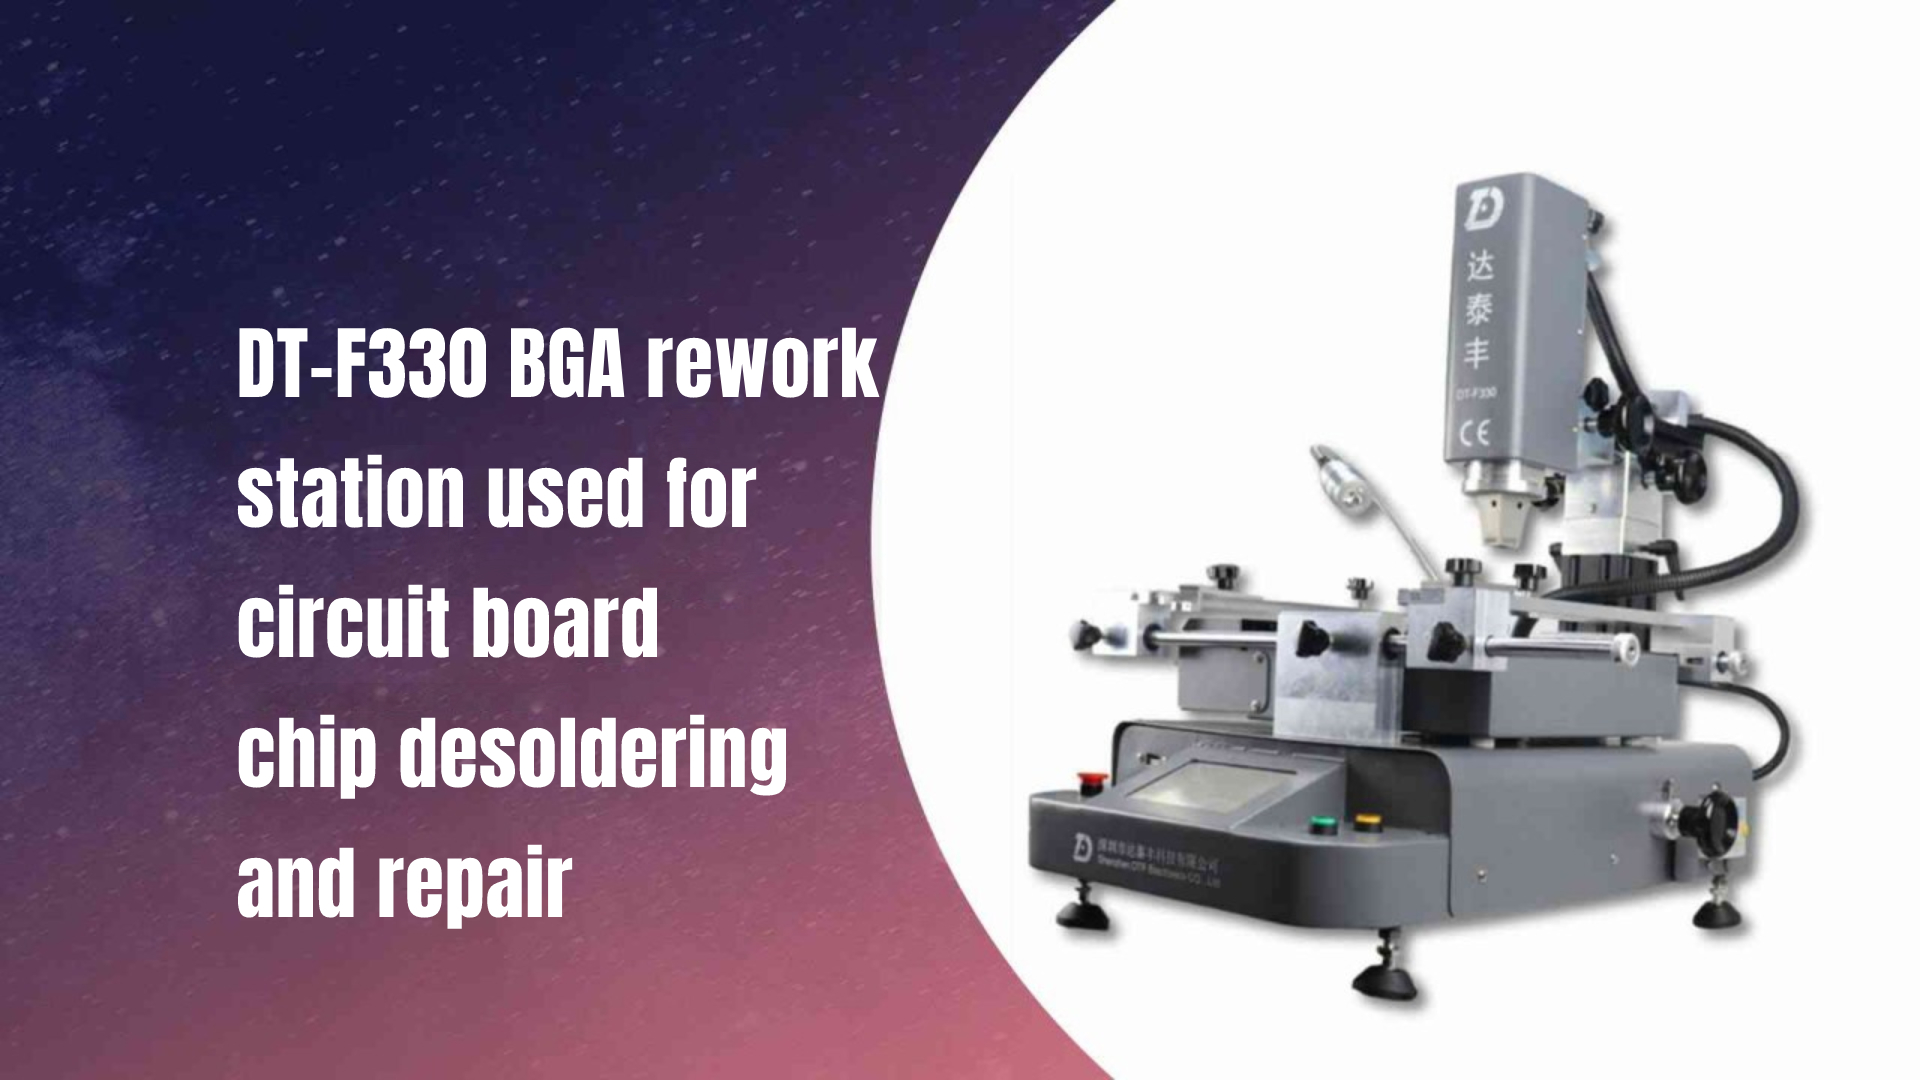 Паяльная станция DT-F330 BGA, используемая для распайки и ремонта микросхем печатной платы.